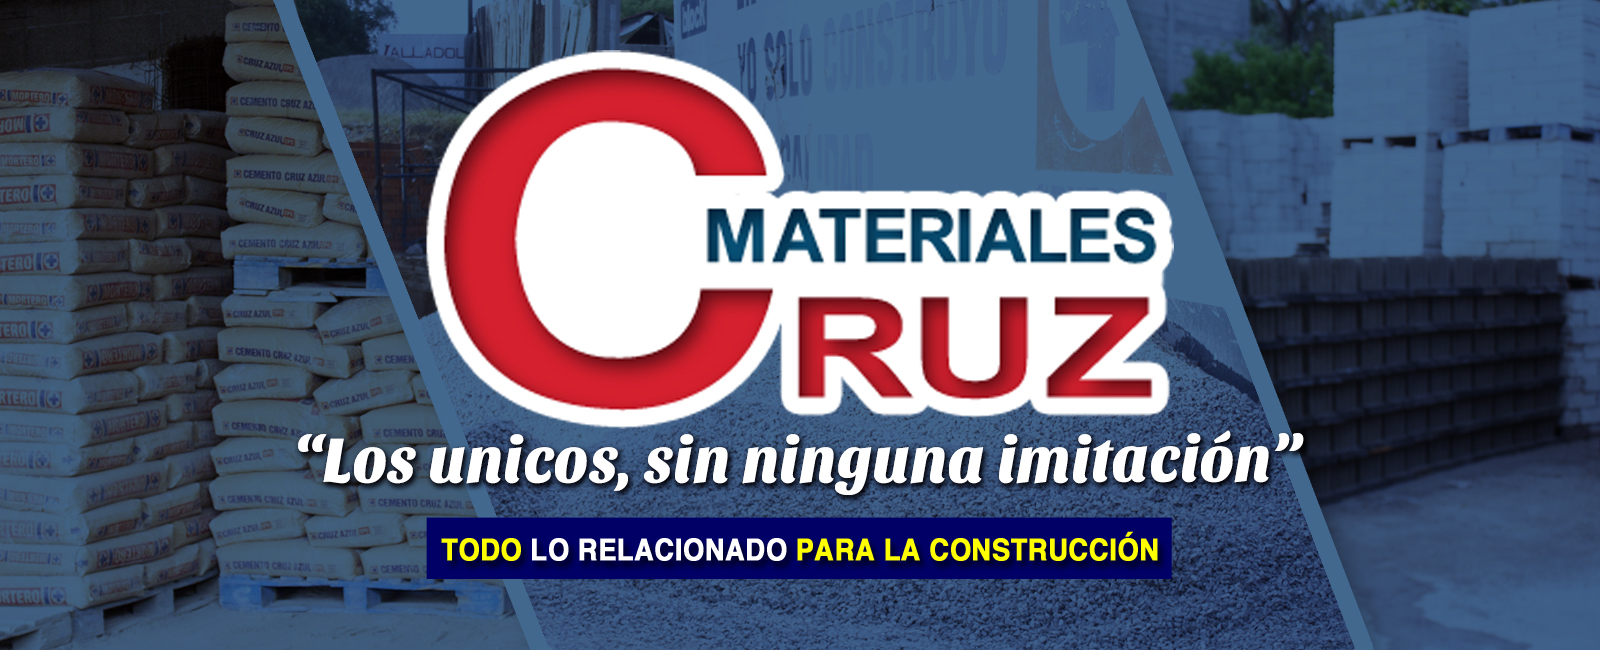 materiales-cruz-construccion-almanaque-mx